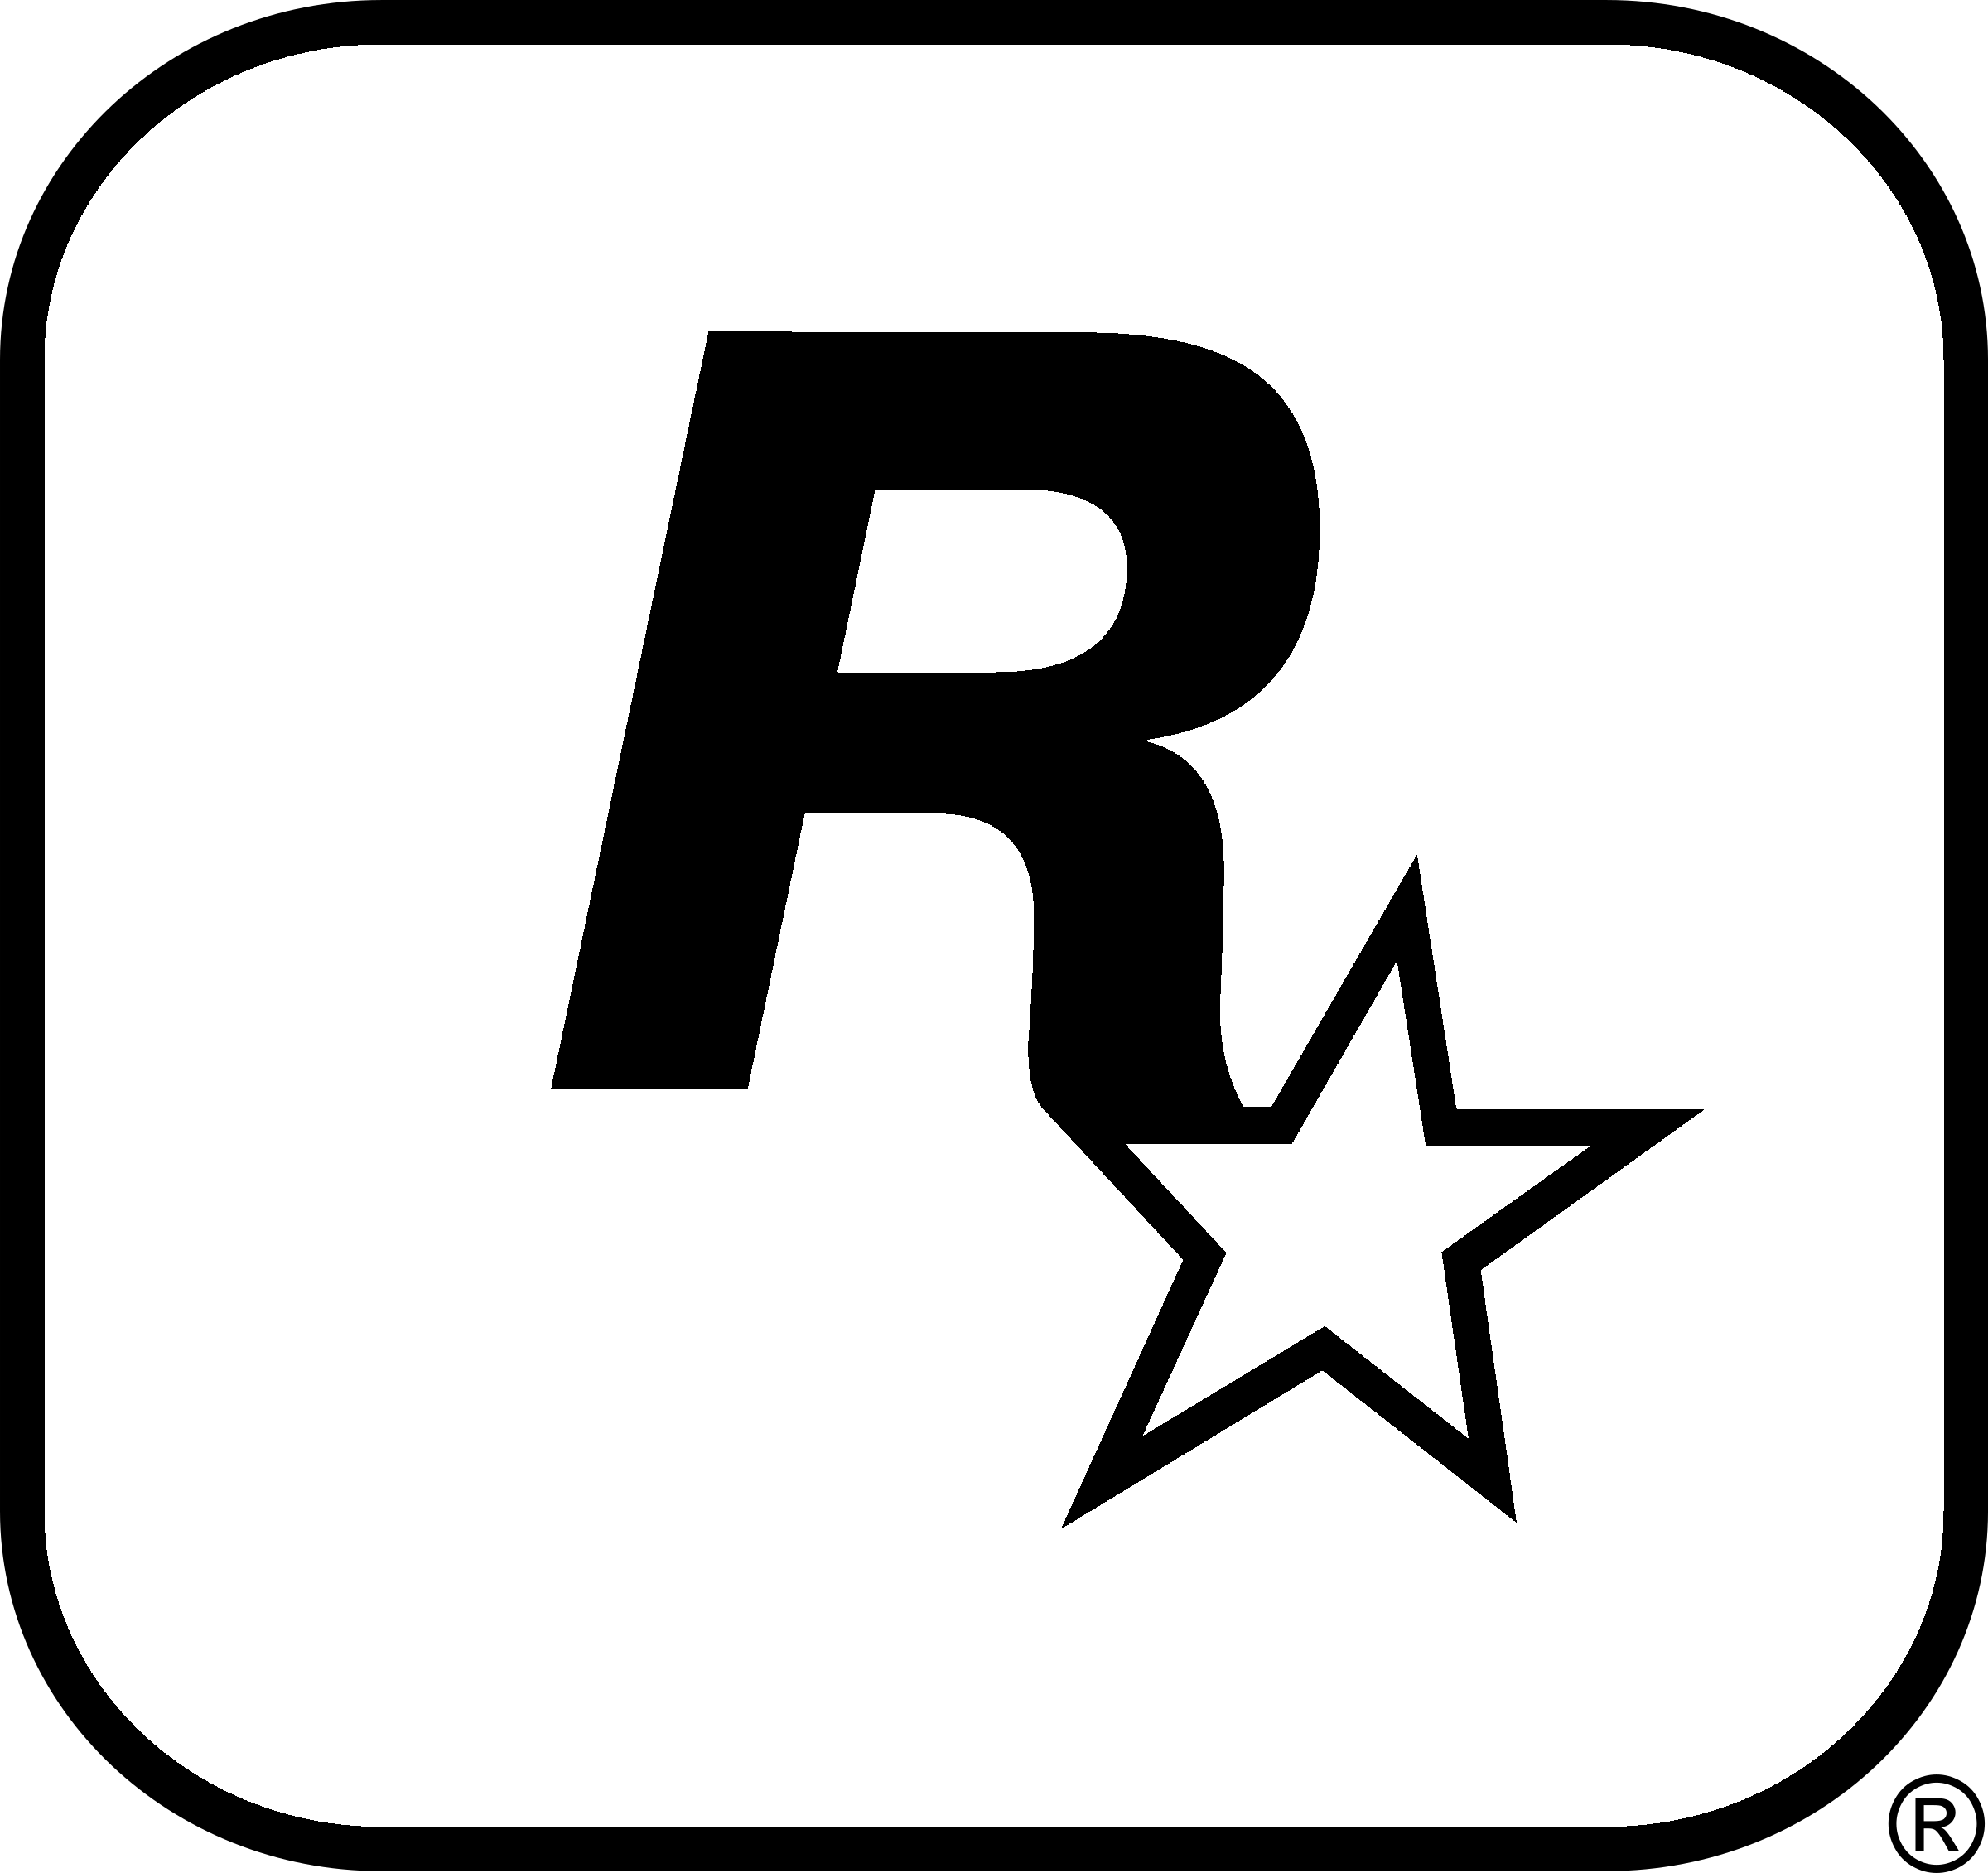 Rockstar Games – Logos, Bra